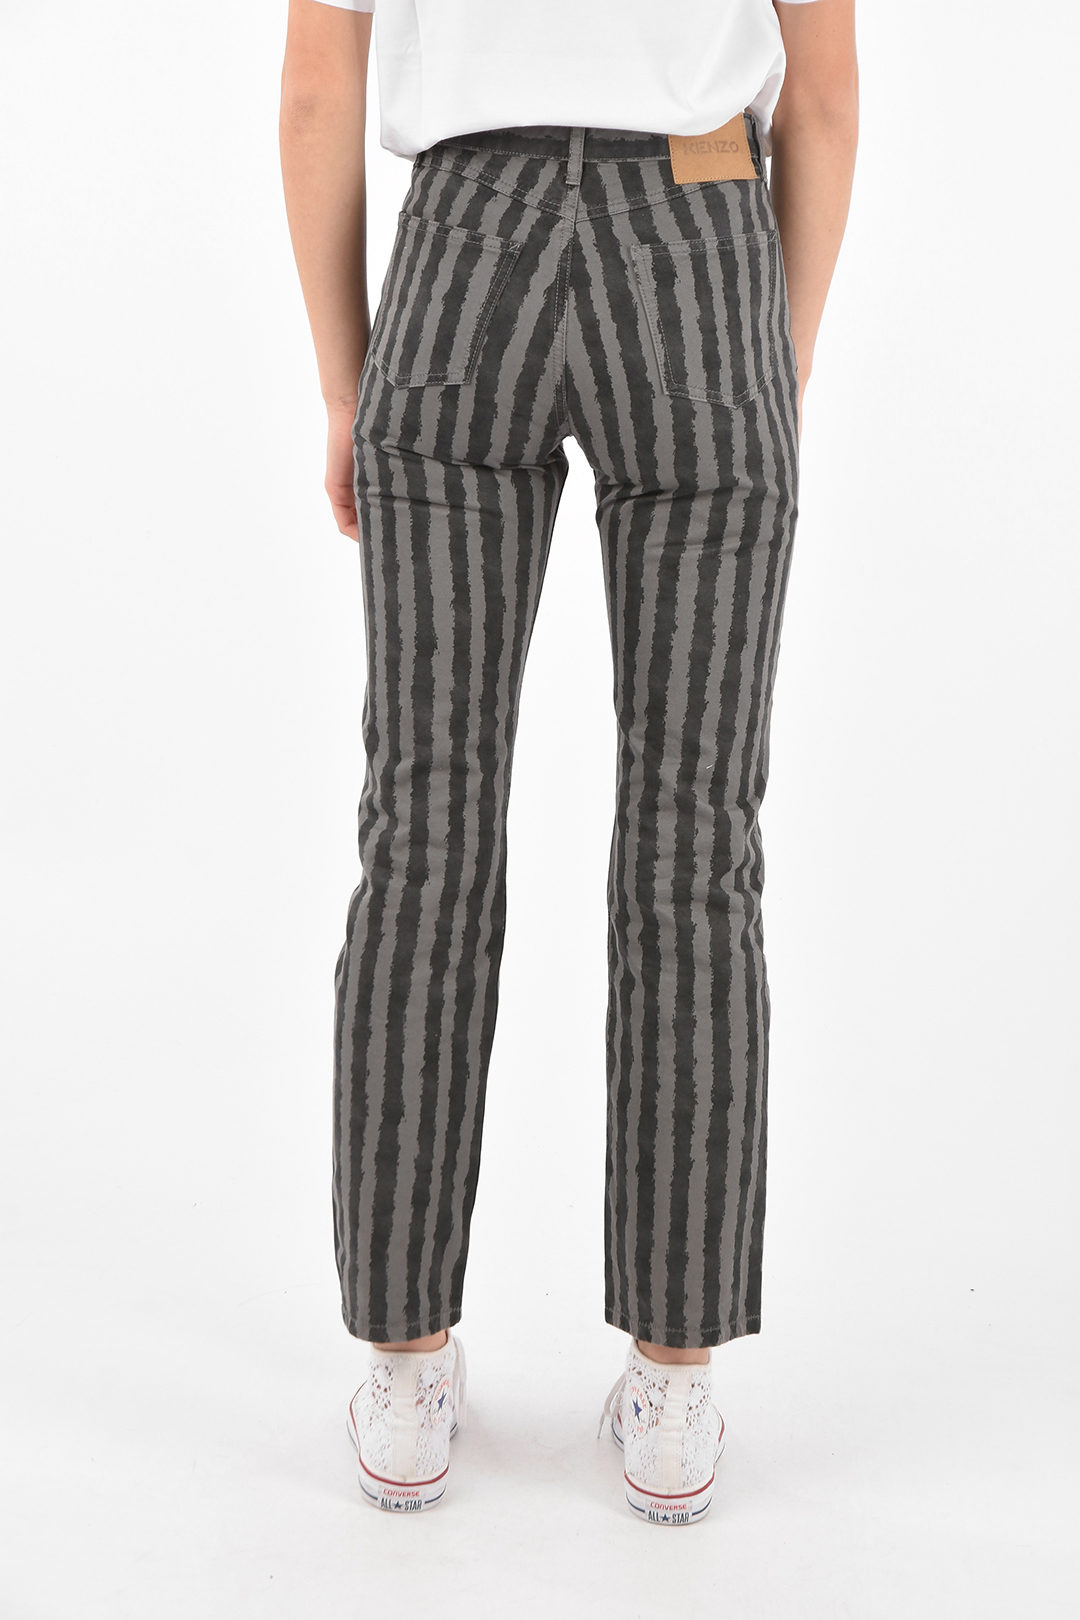 Vertical Striped KANSAI YAMAMOTO Cotton Pants